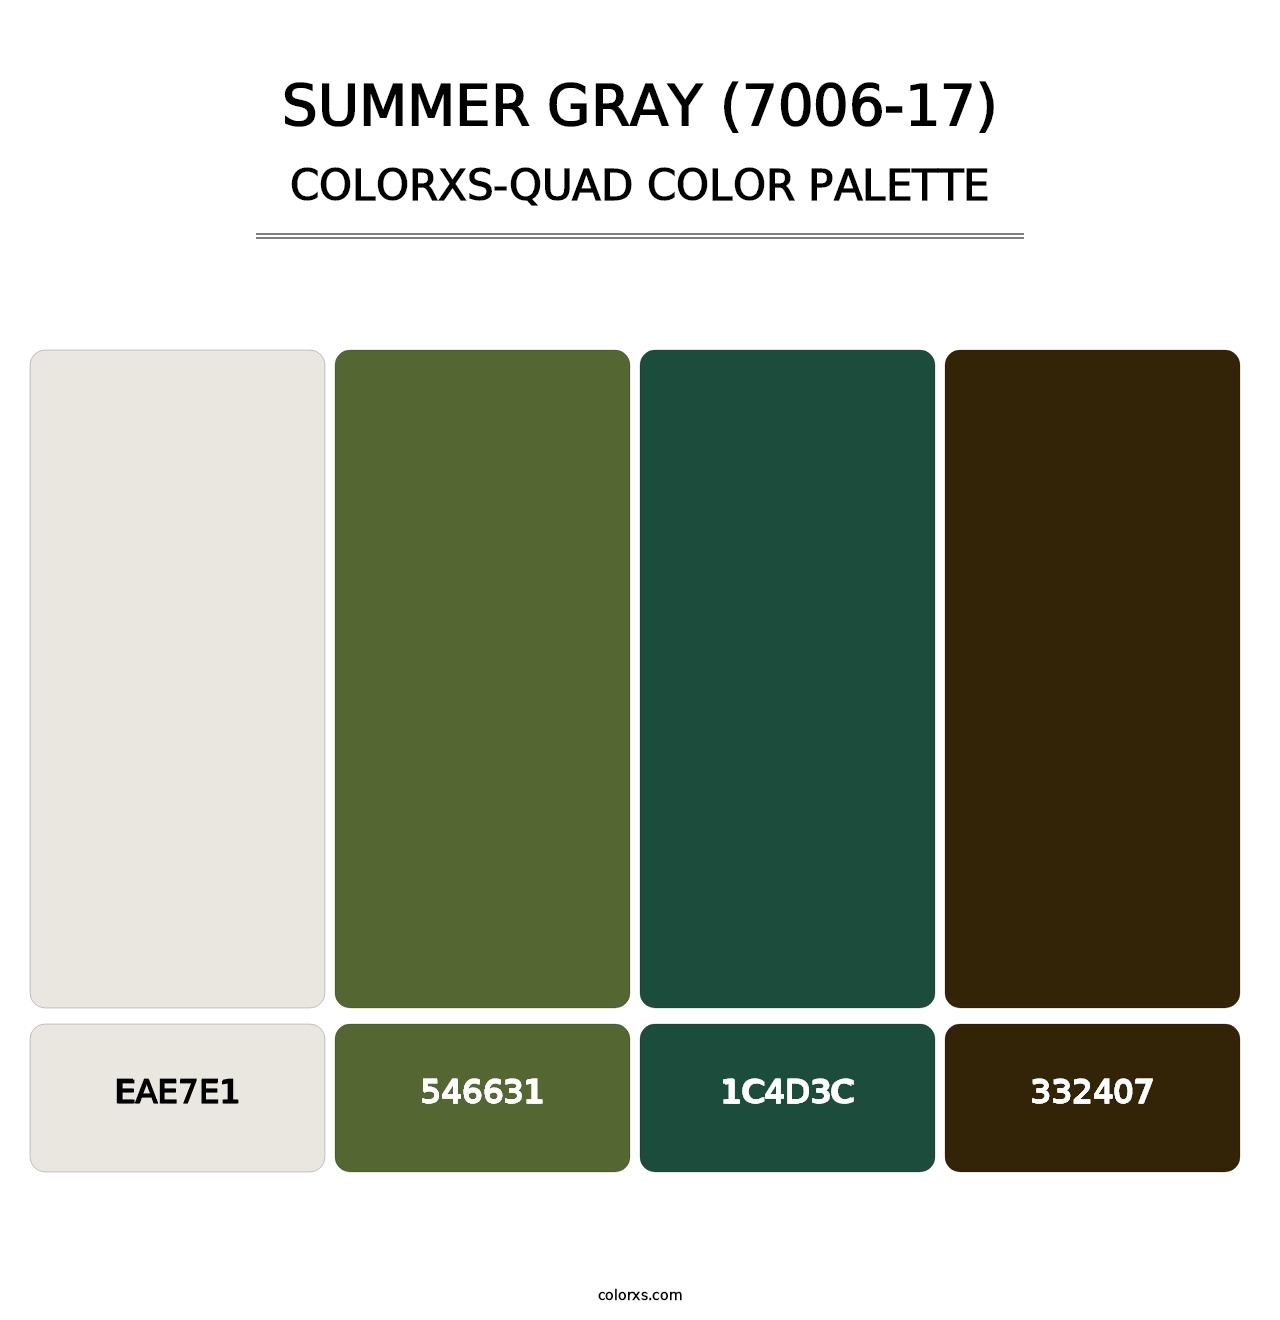 Summer Gray (7006-17) - Colorxs Quad Palette